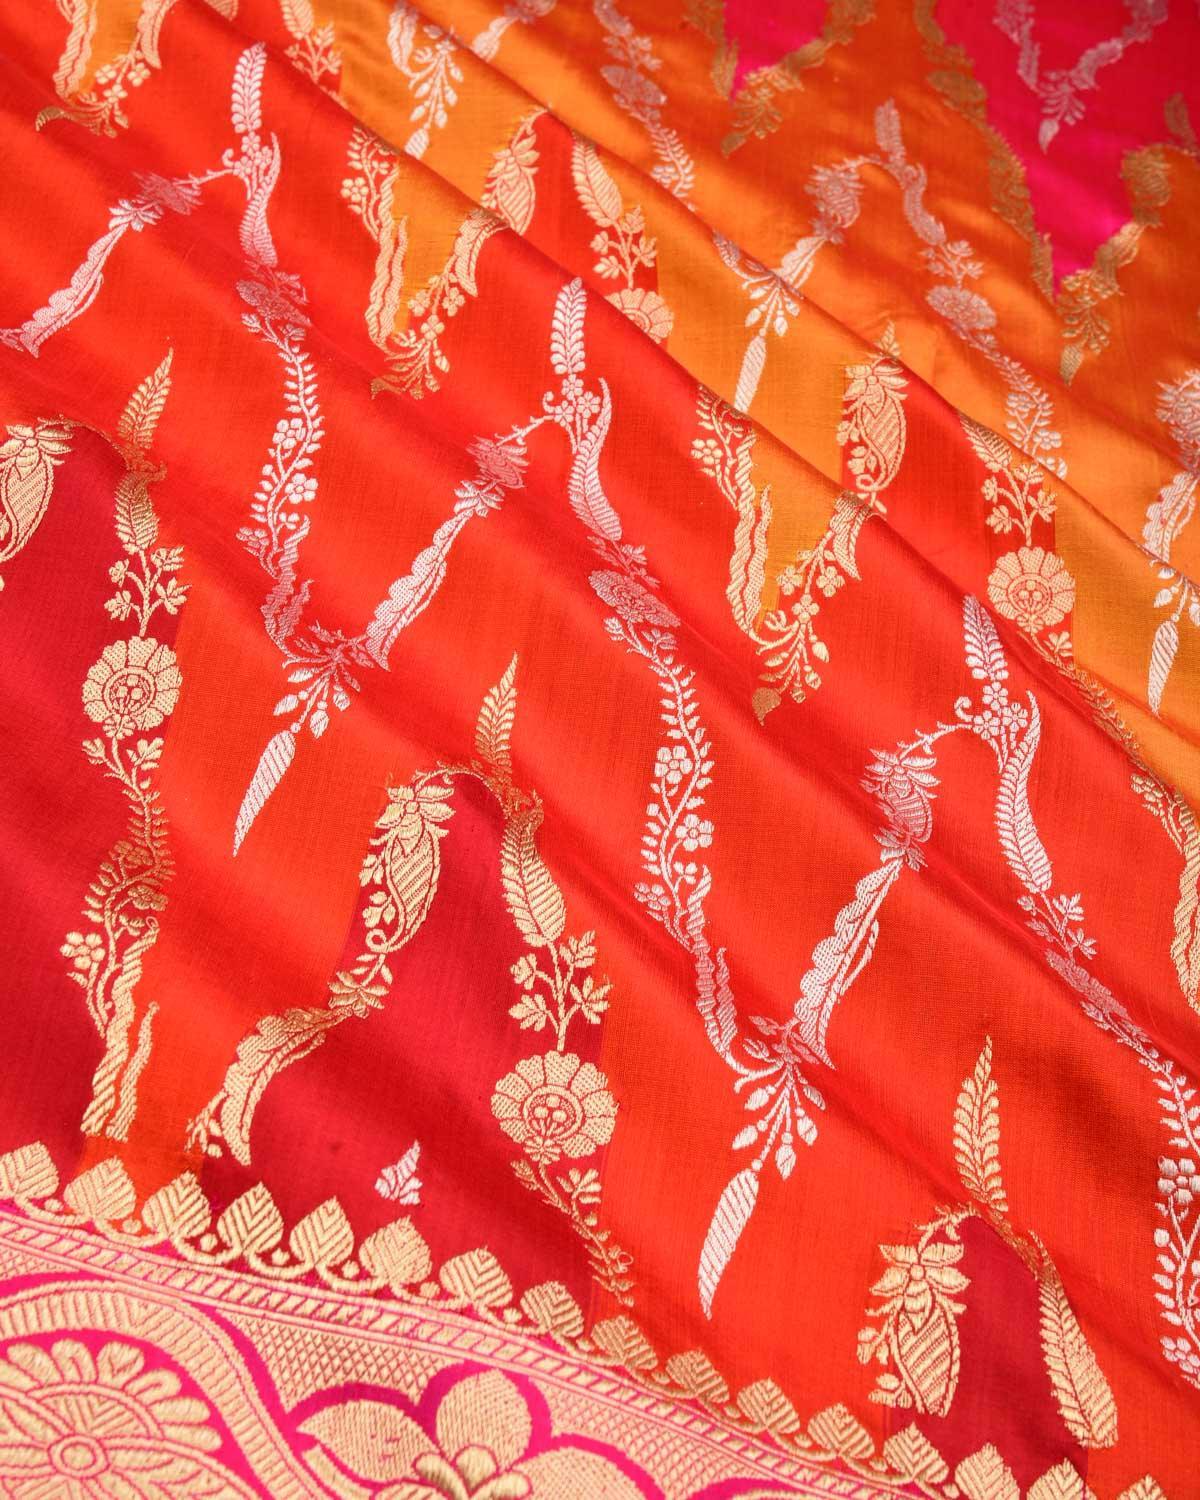 Multi-color Banarasi Rangkaat Gold & Silver Zari Kadhuan Brocade Handwoven Katan Silk Saree - By HolyWeaves, Benares